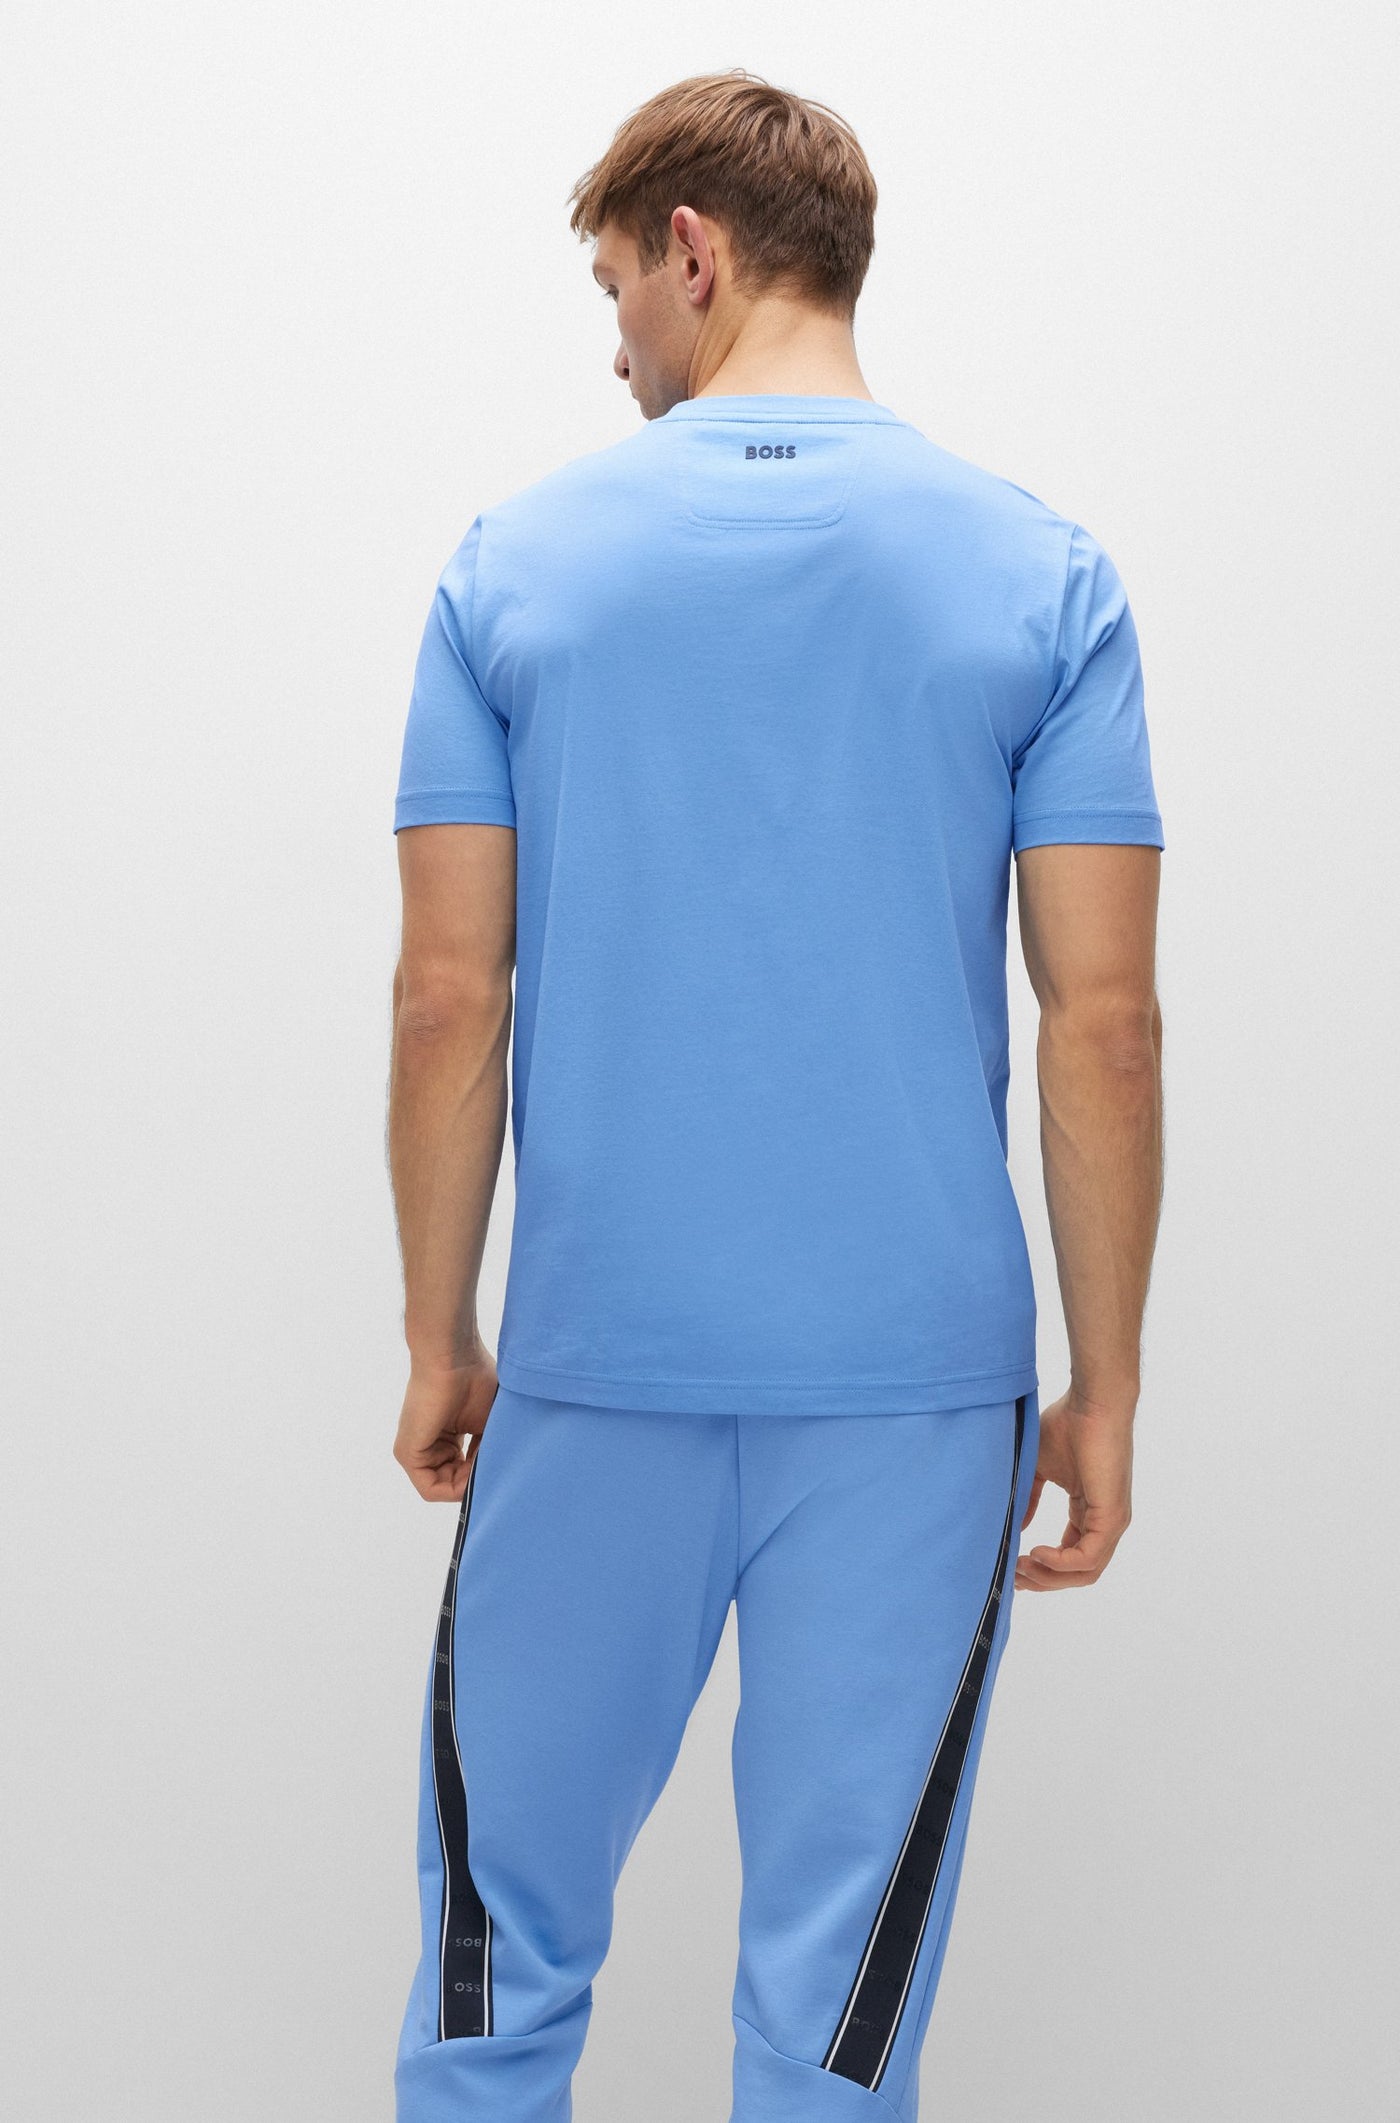 Men's Hugo Boss Tee 1 T-shirt - Blue